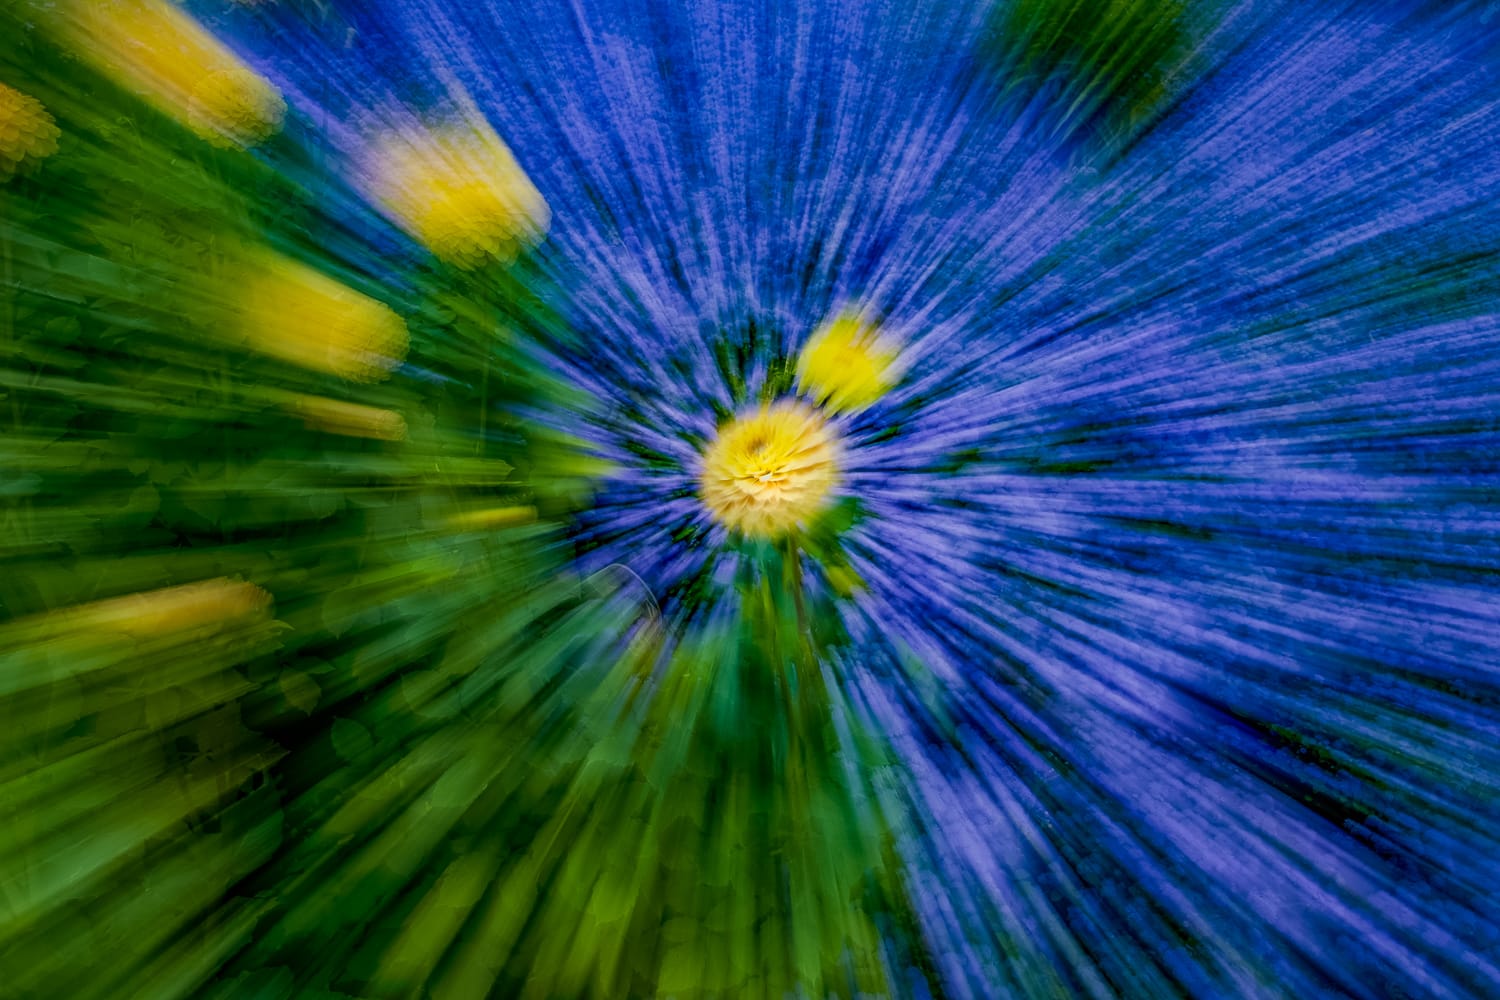 ICM- Blumenfotografie durch Bewegung